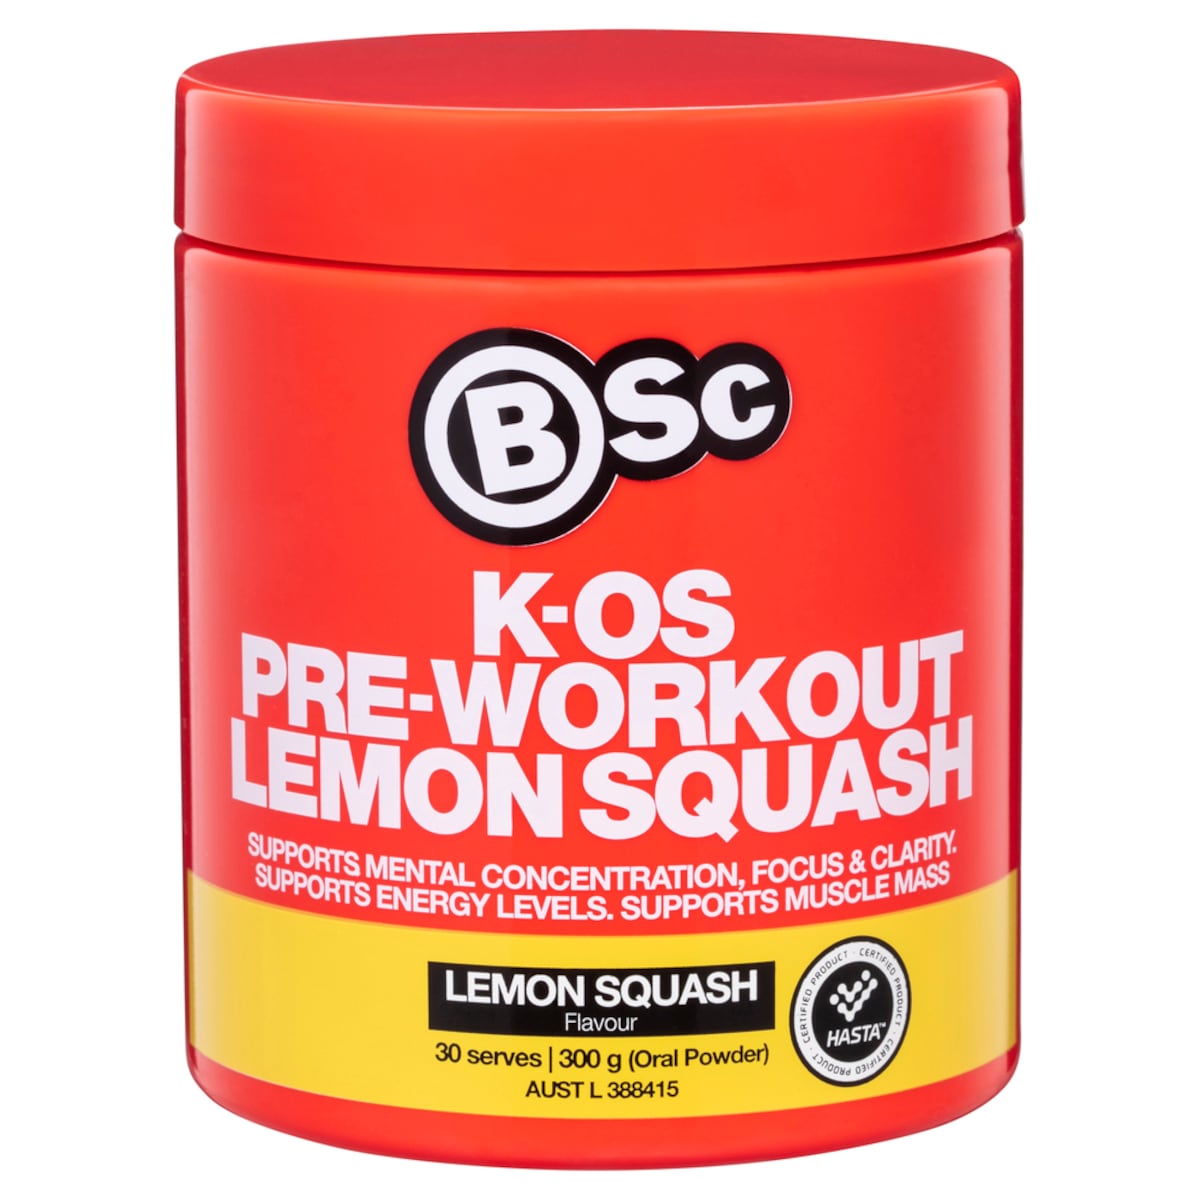 BSc Body Science K-OS Pre-Workout Lemon Squash 300g Australia